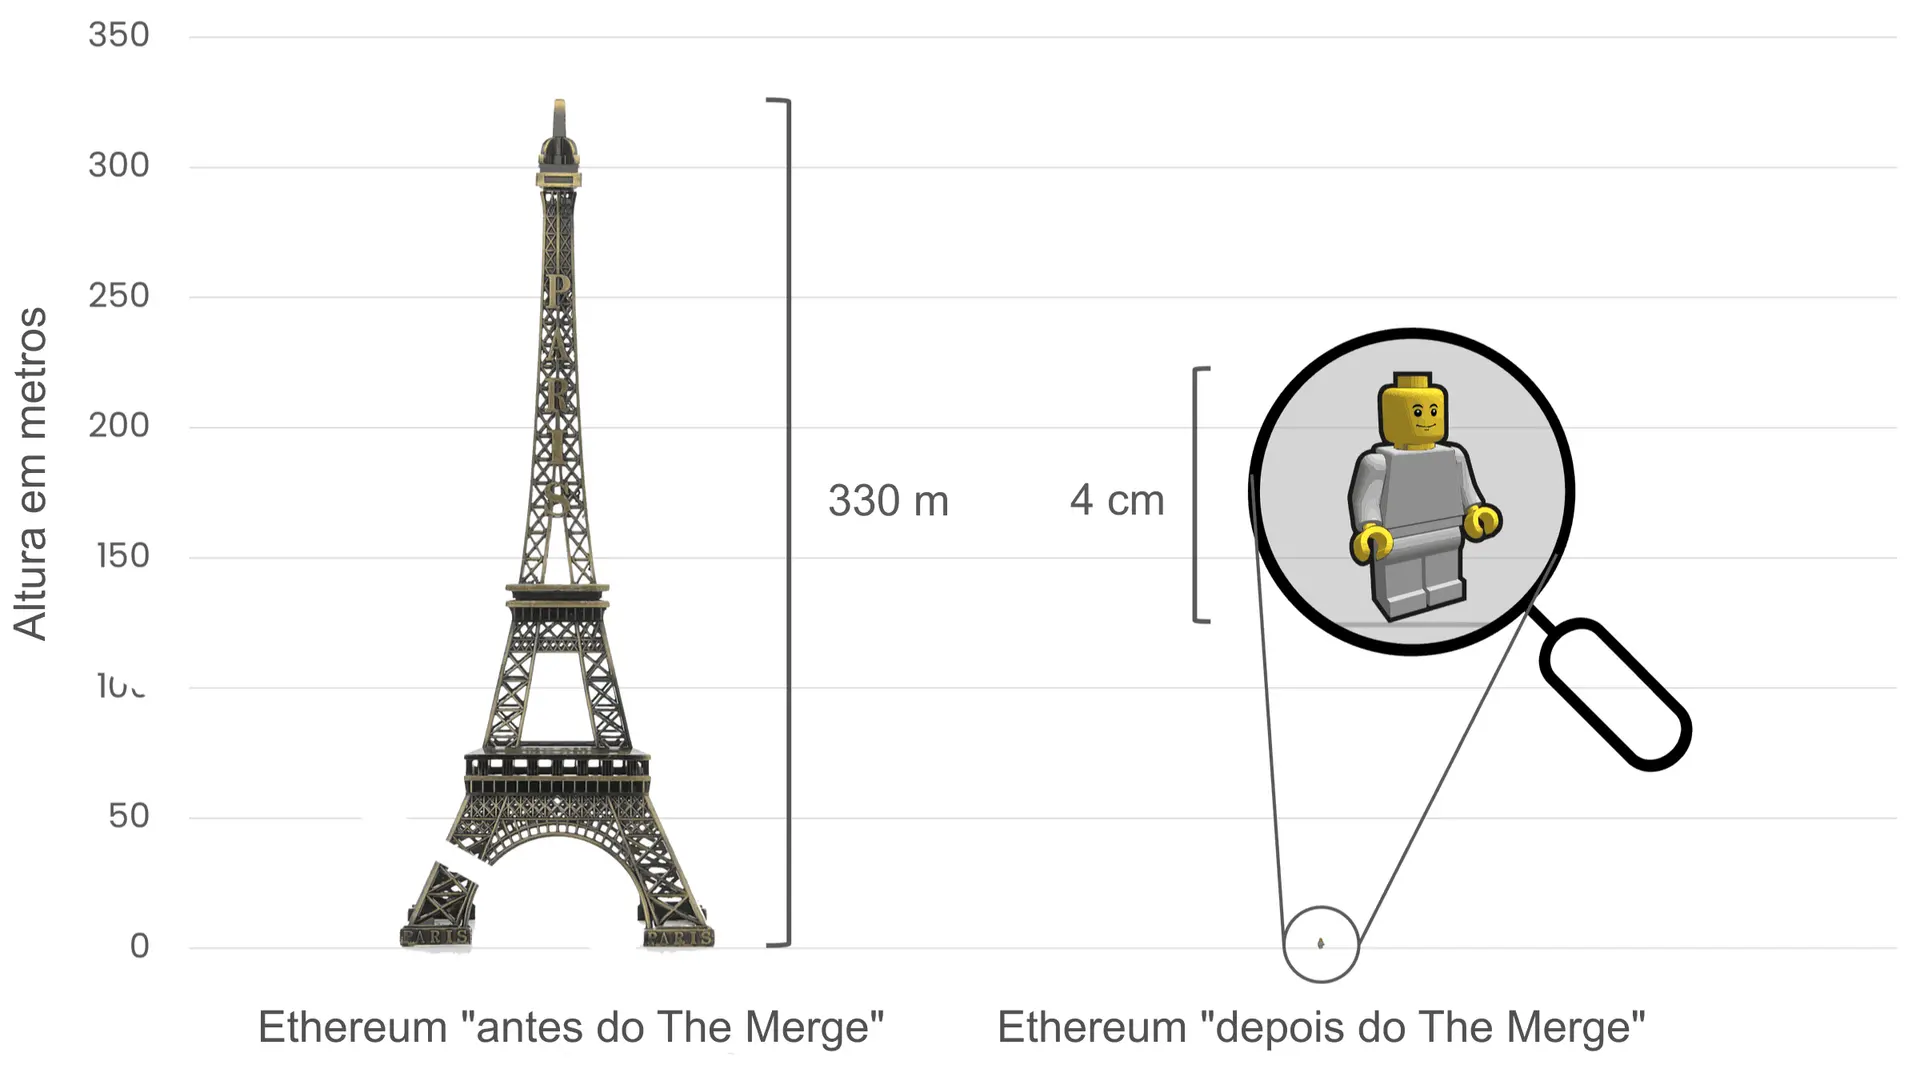 Comparação do consumo de energia do Ethereum antes e depois da fusão (The Merge), usando a Torre Eiffel (330 metros de altura) à esquerda, para simbolizar o elevado consumo de energia antes do The Merge, e uma pequena figura de Lego de 4 cm de altura à direta, para representar a redução drástica do consumo de energia após o The Merge.